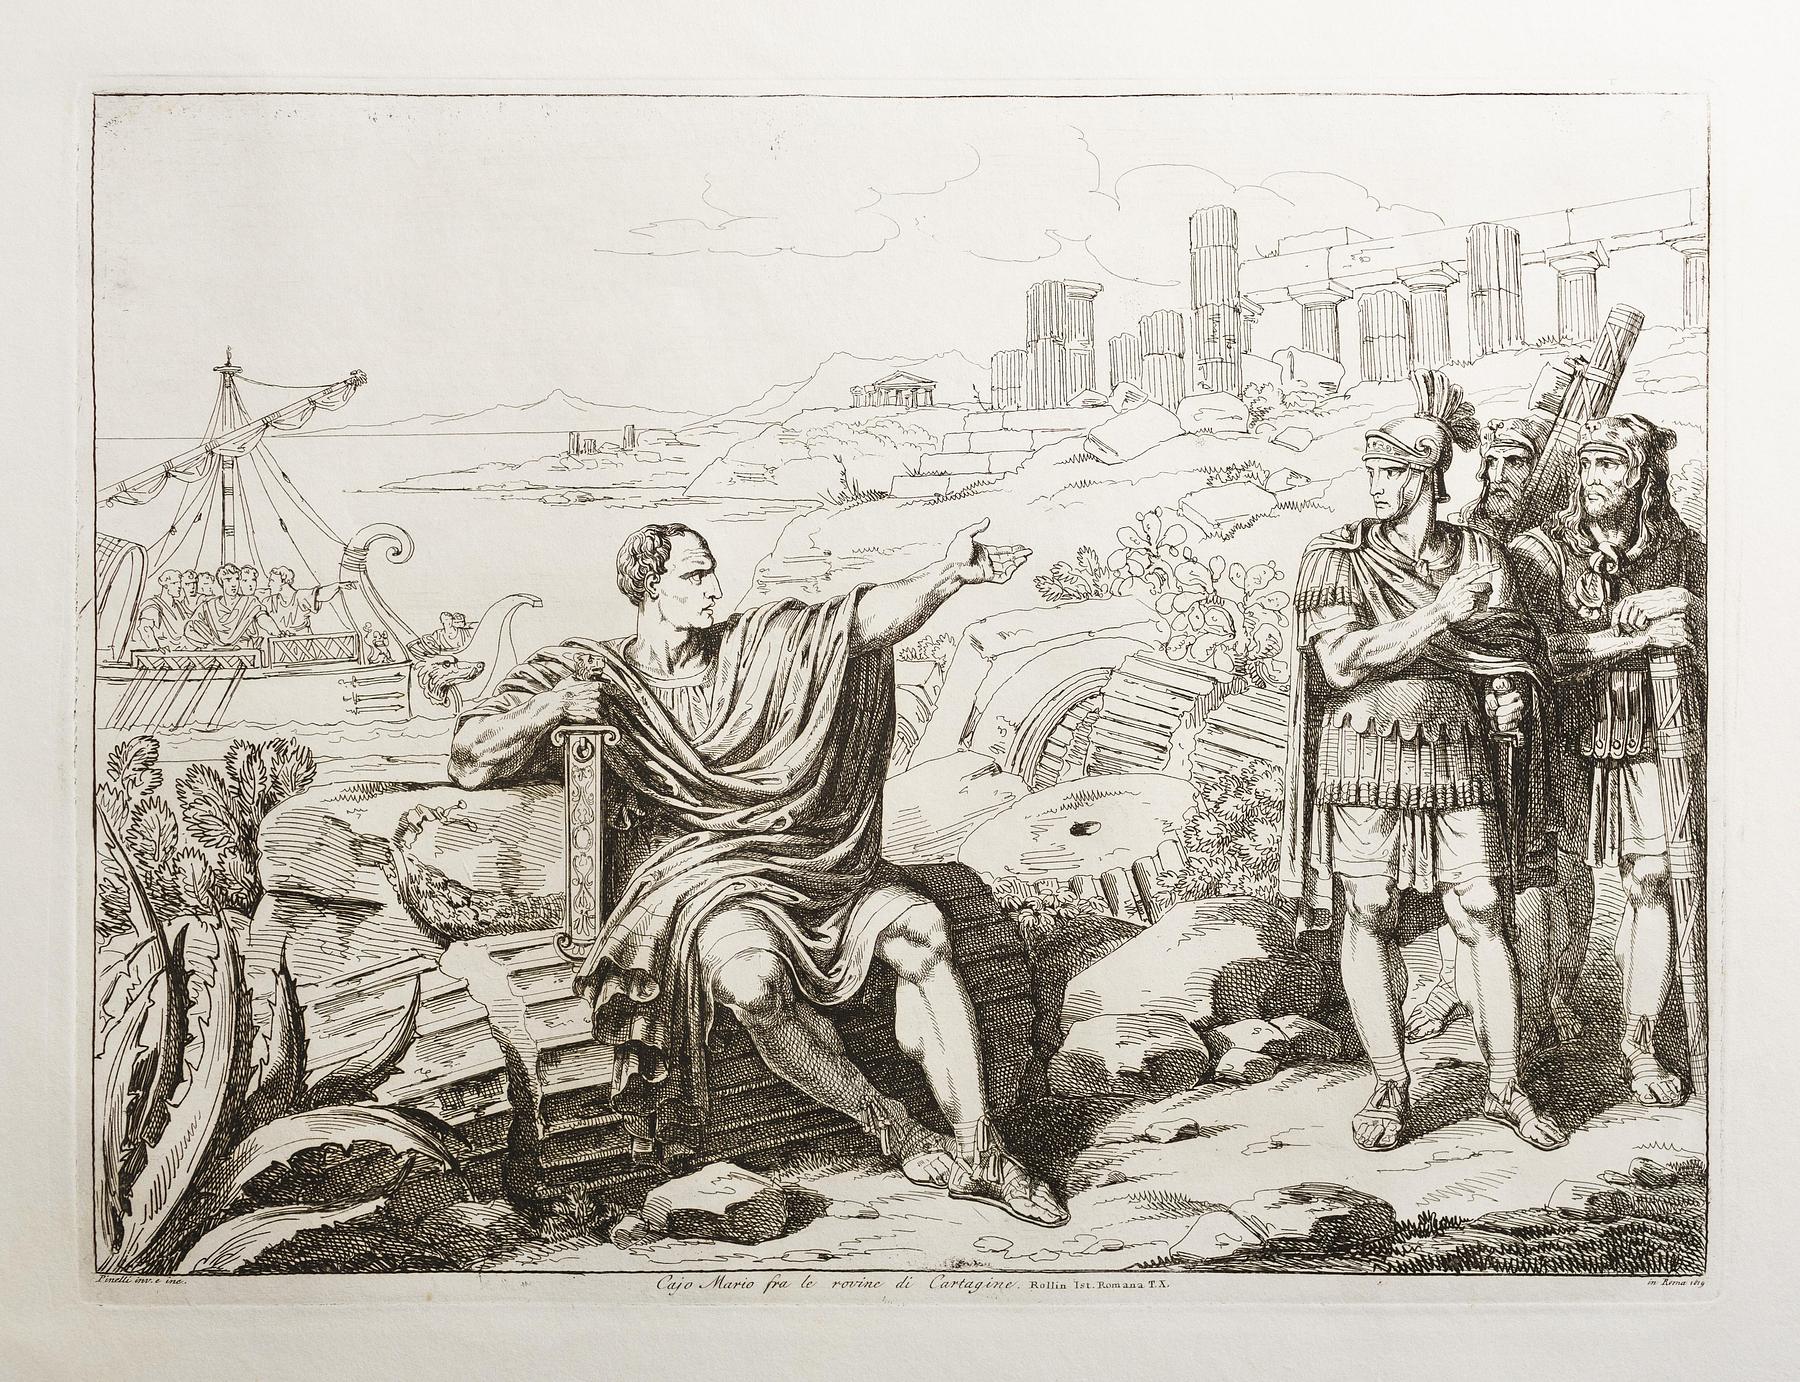 Gaius Marius imellem ruinerne af Karthago, E943,80